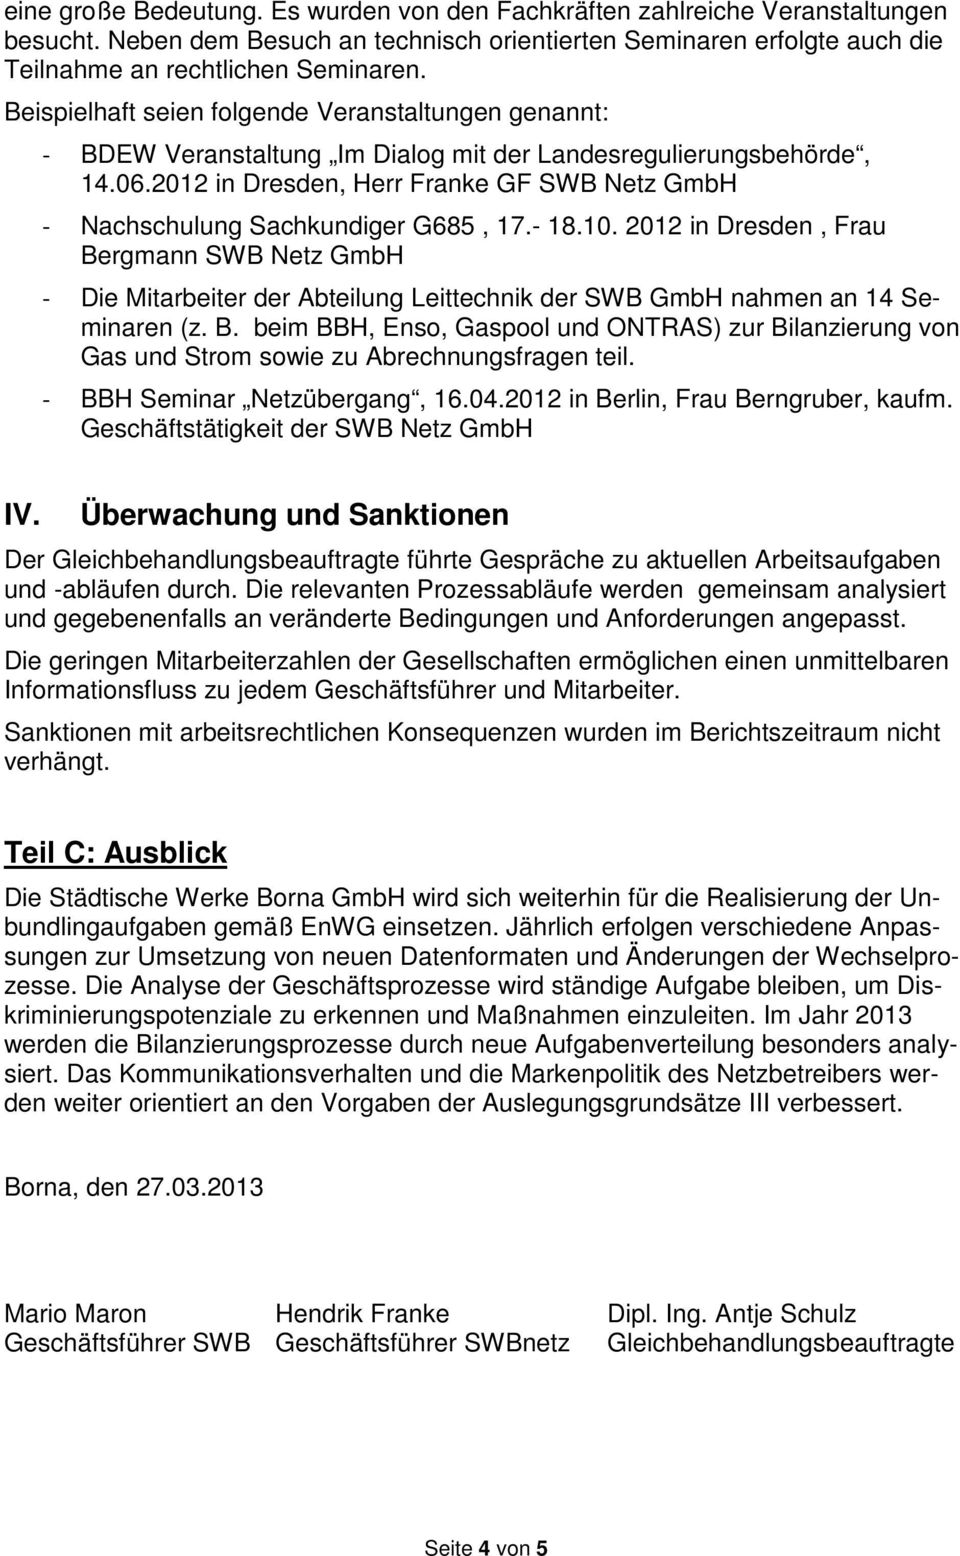 2012 in Dresden, Herr Franke GF SWB Netz GmbH - Nachschulung Sachkundiger G685, 17.- 18.10.